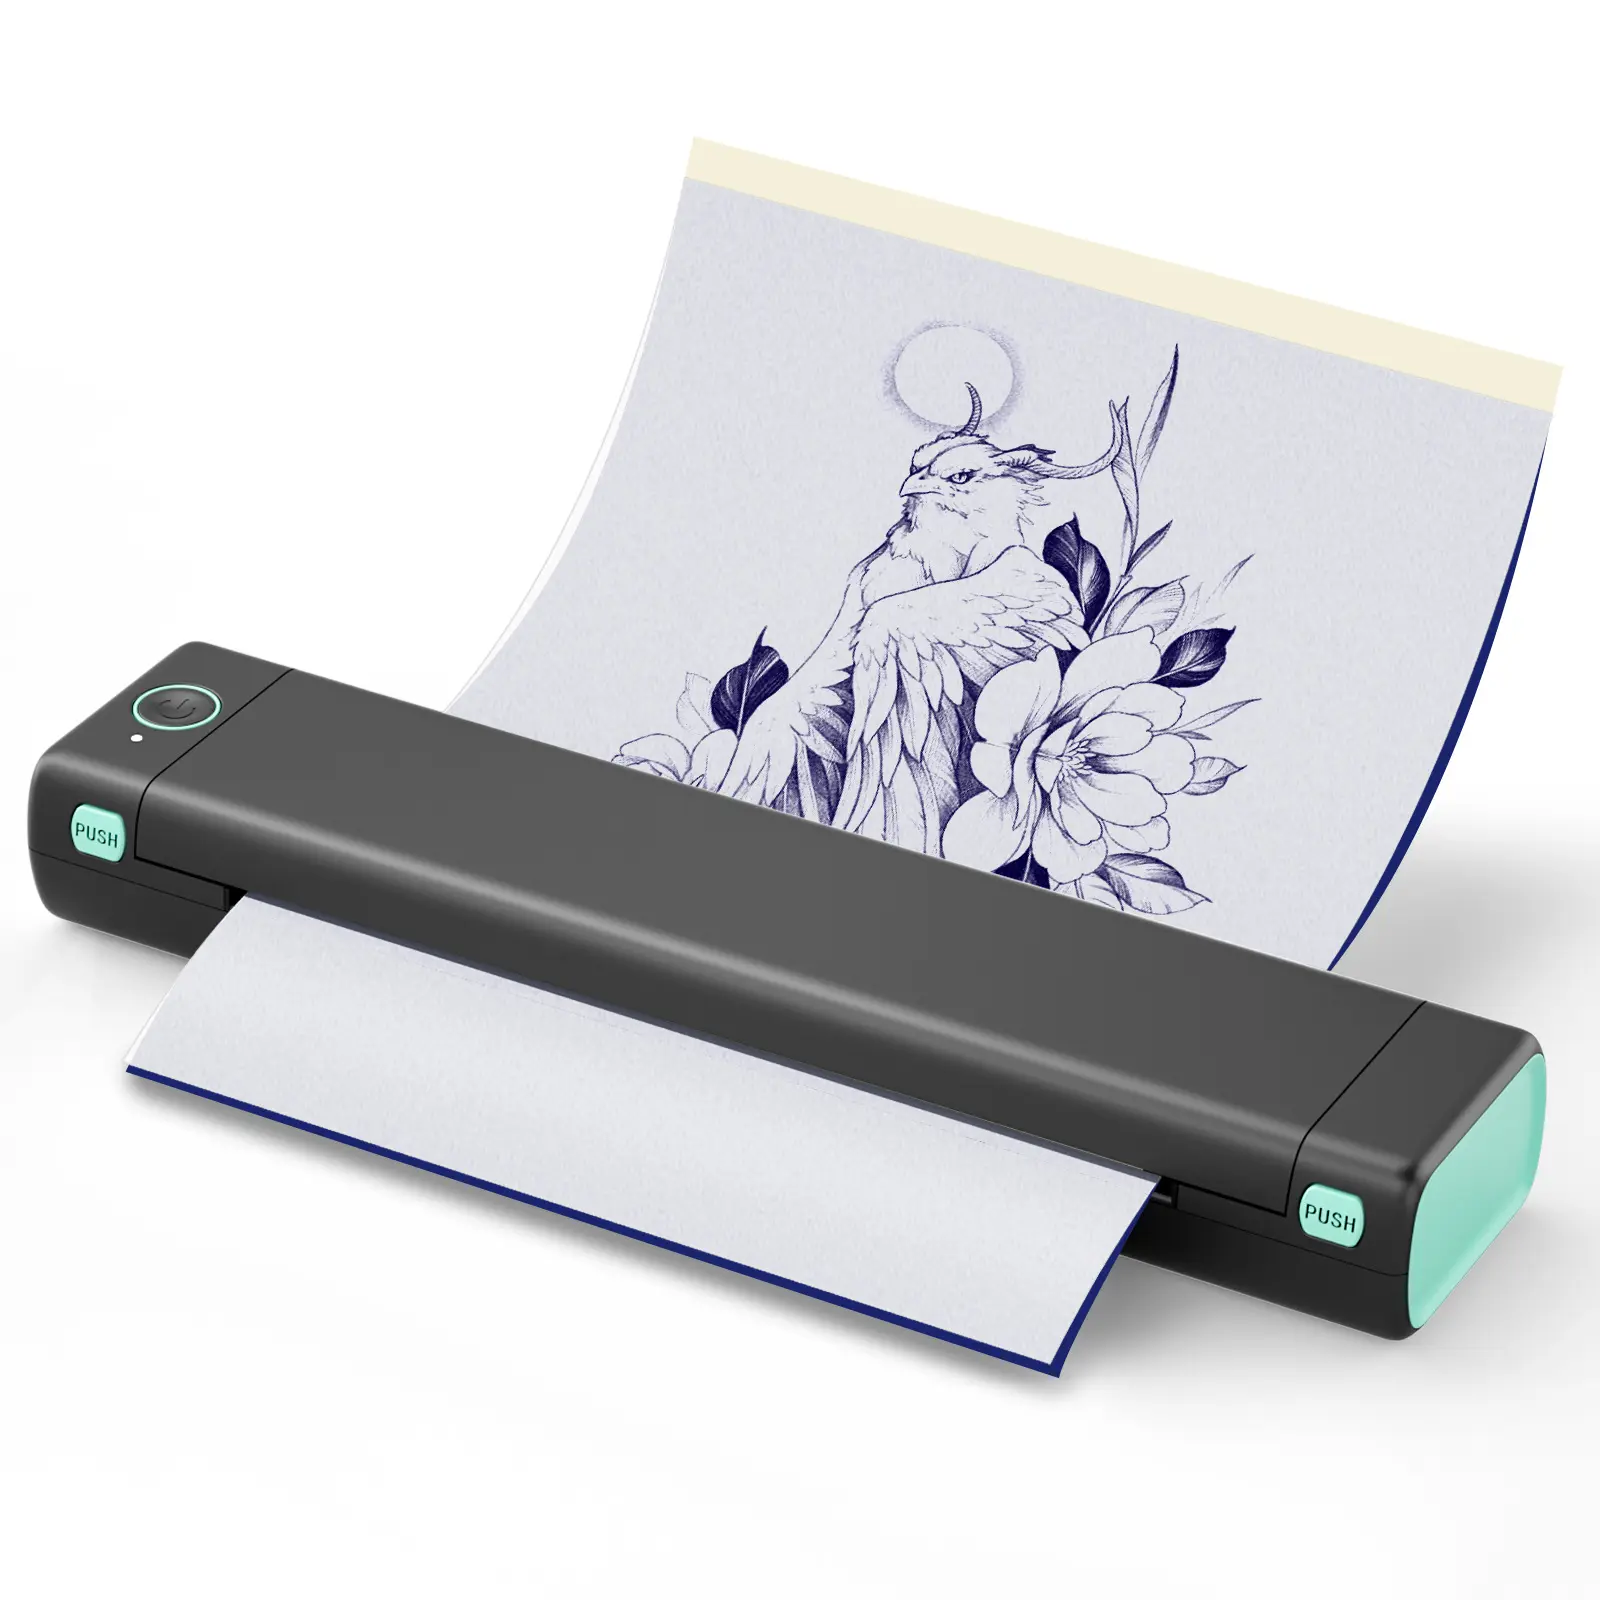 Термальный A4 портативный принтер 8,26 "x 11,69" A4 бумажный беспроводной бесчернильный принтер M08F